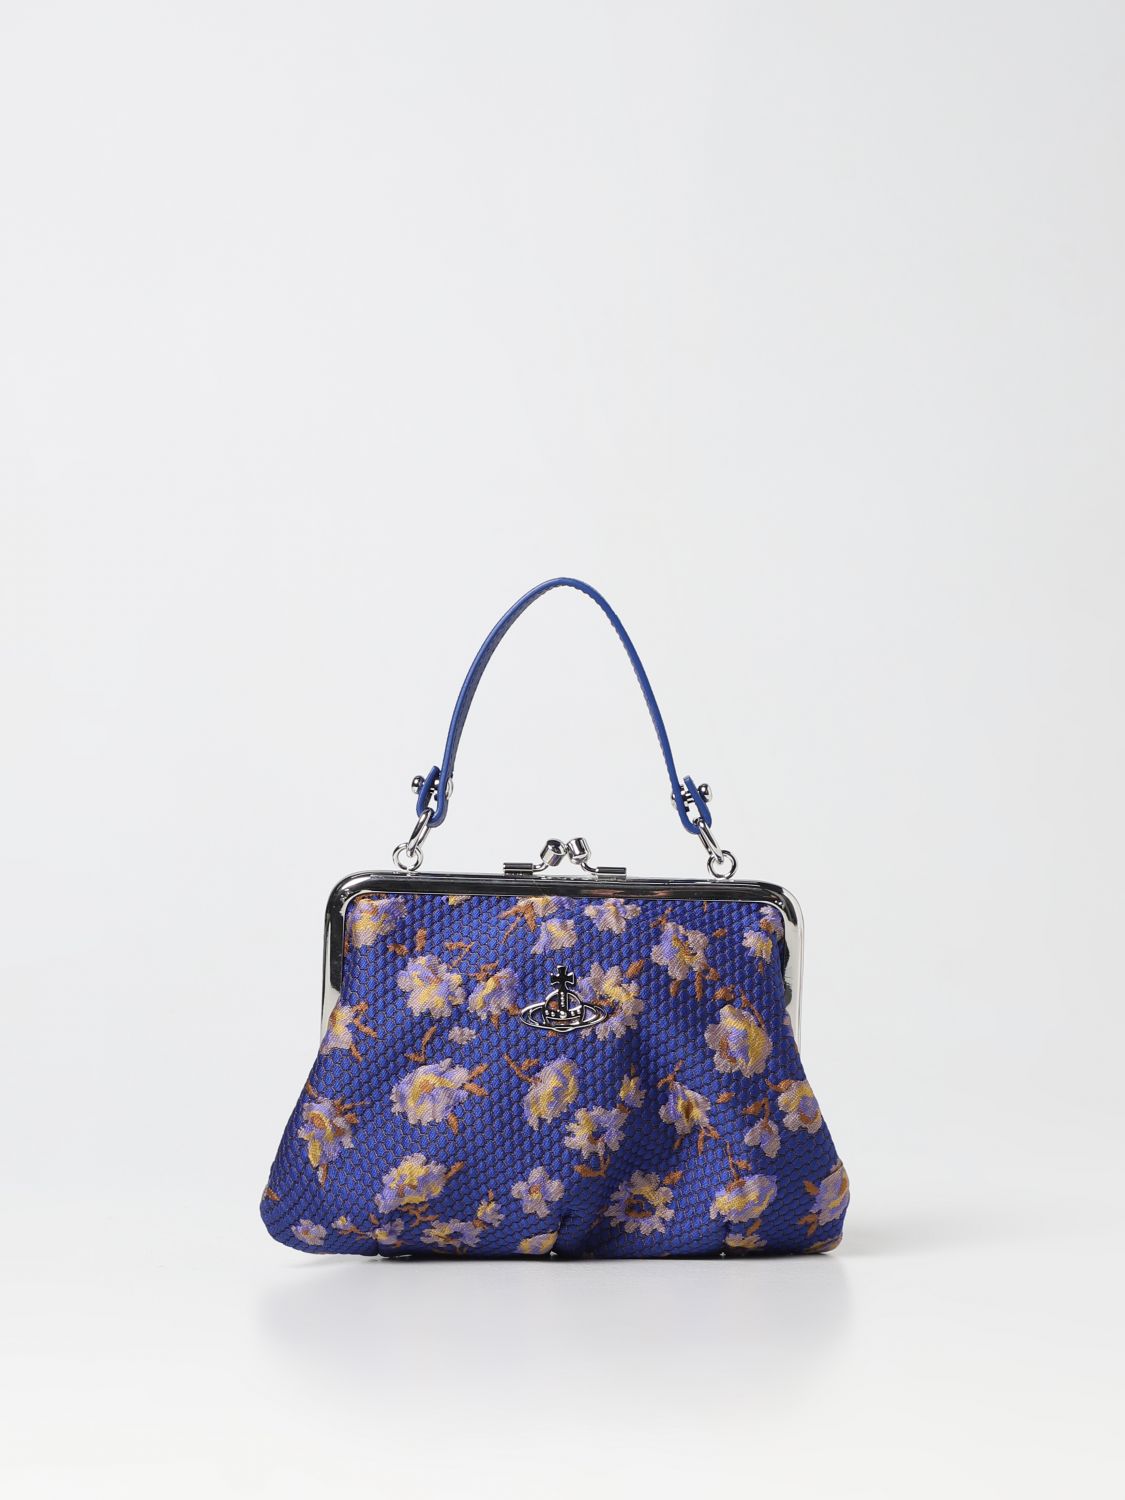 Vivian Louis Vuitton Handbags for Women - Vestiaire Collective